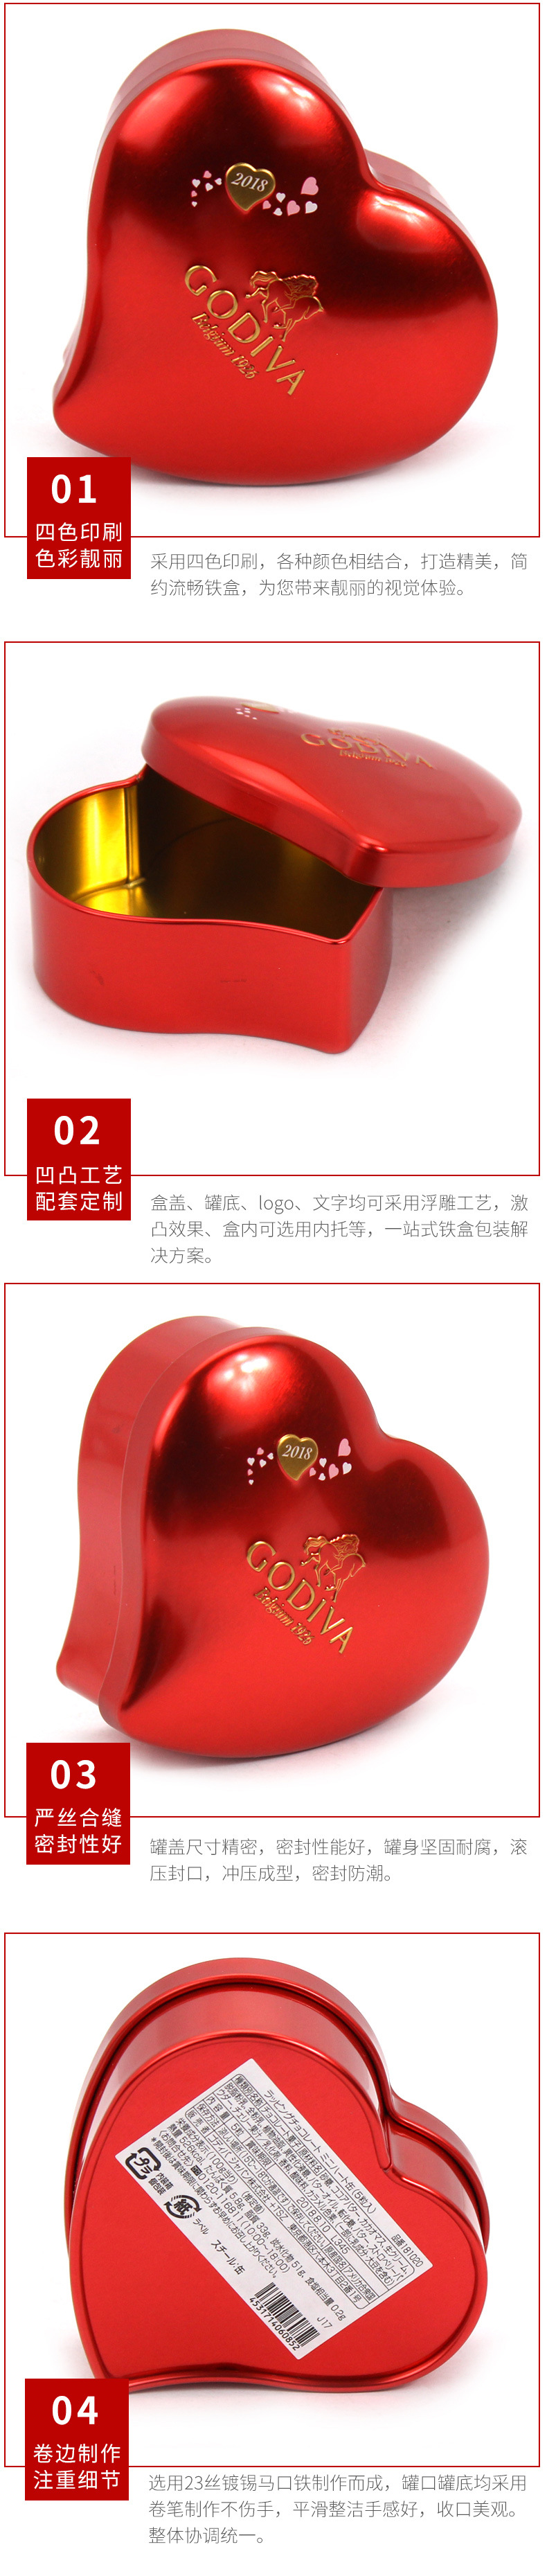 七夕情人节创意礼物包装铁盒 喜糖铁盒 红色爱心形巧克力铁盒定制示例图12